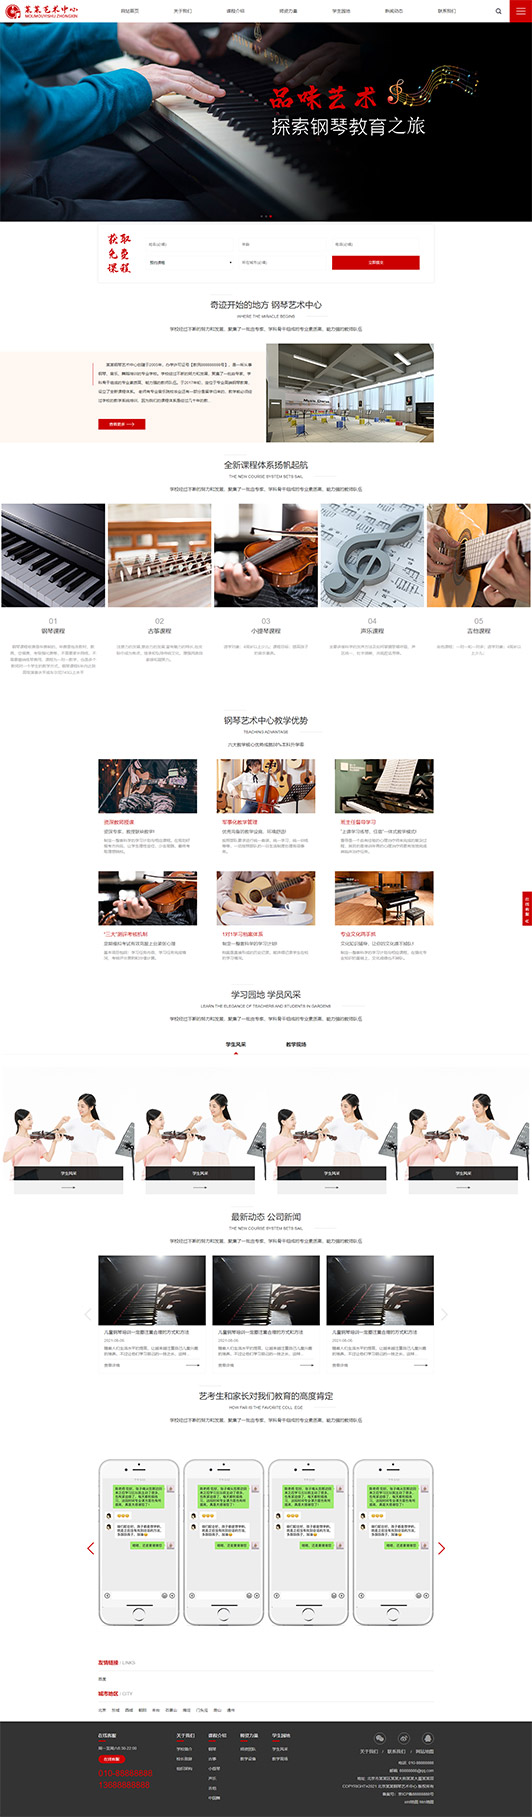 蚌埠钢琴艺术培训公司响应式企业网站